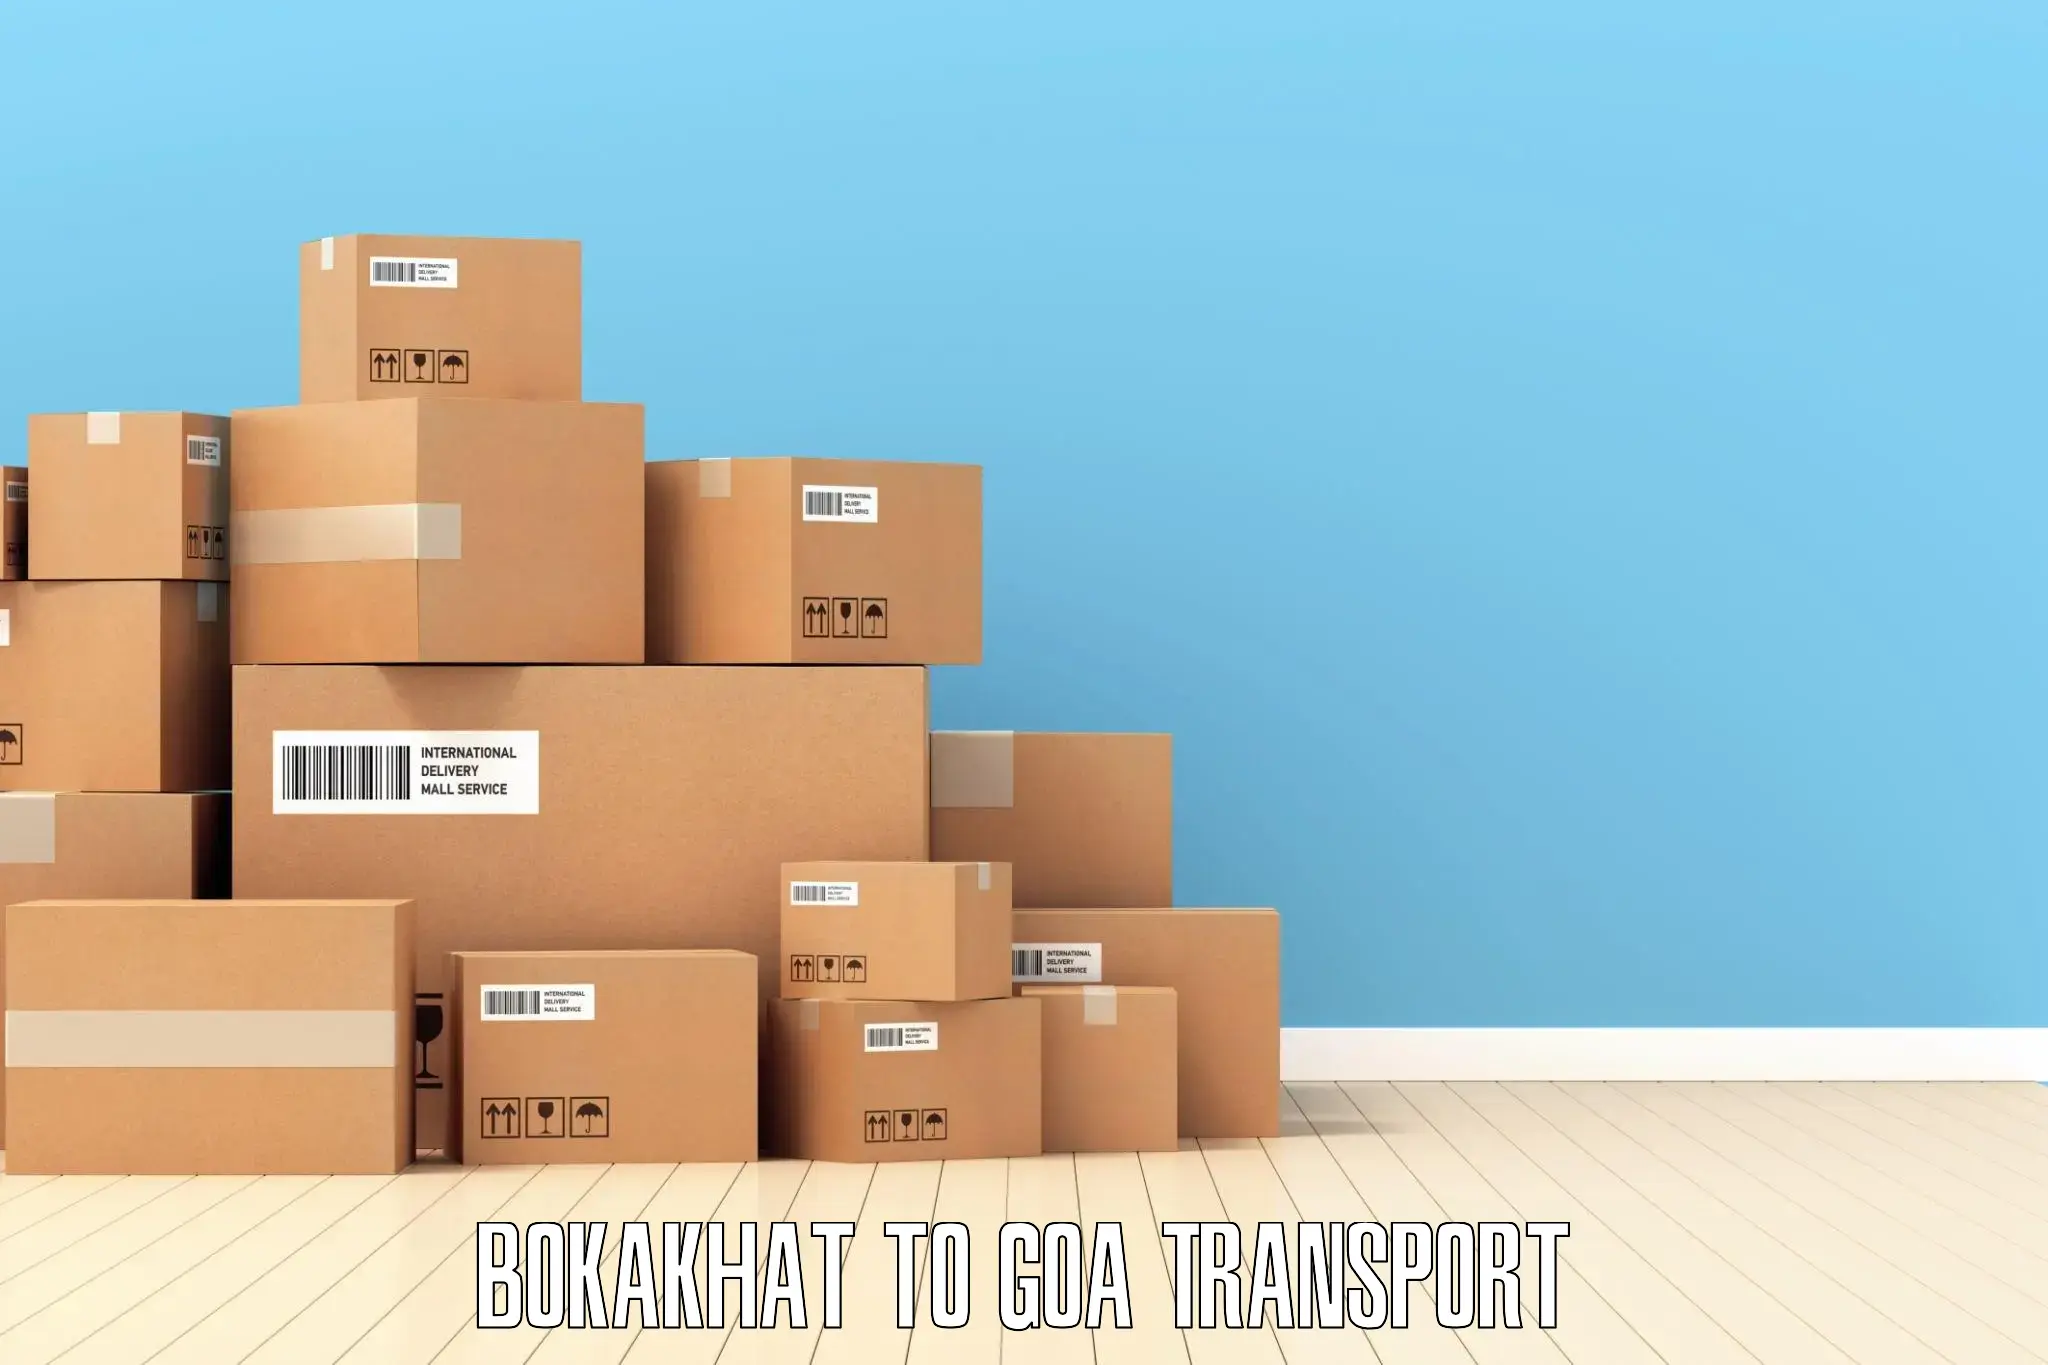 Cargo transport services Bokakhat to Goa University